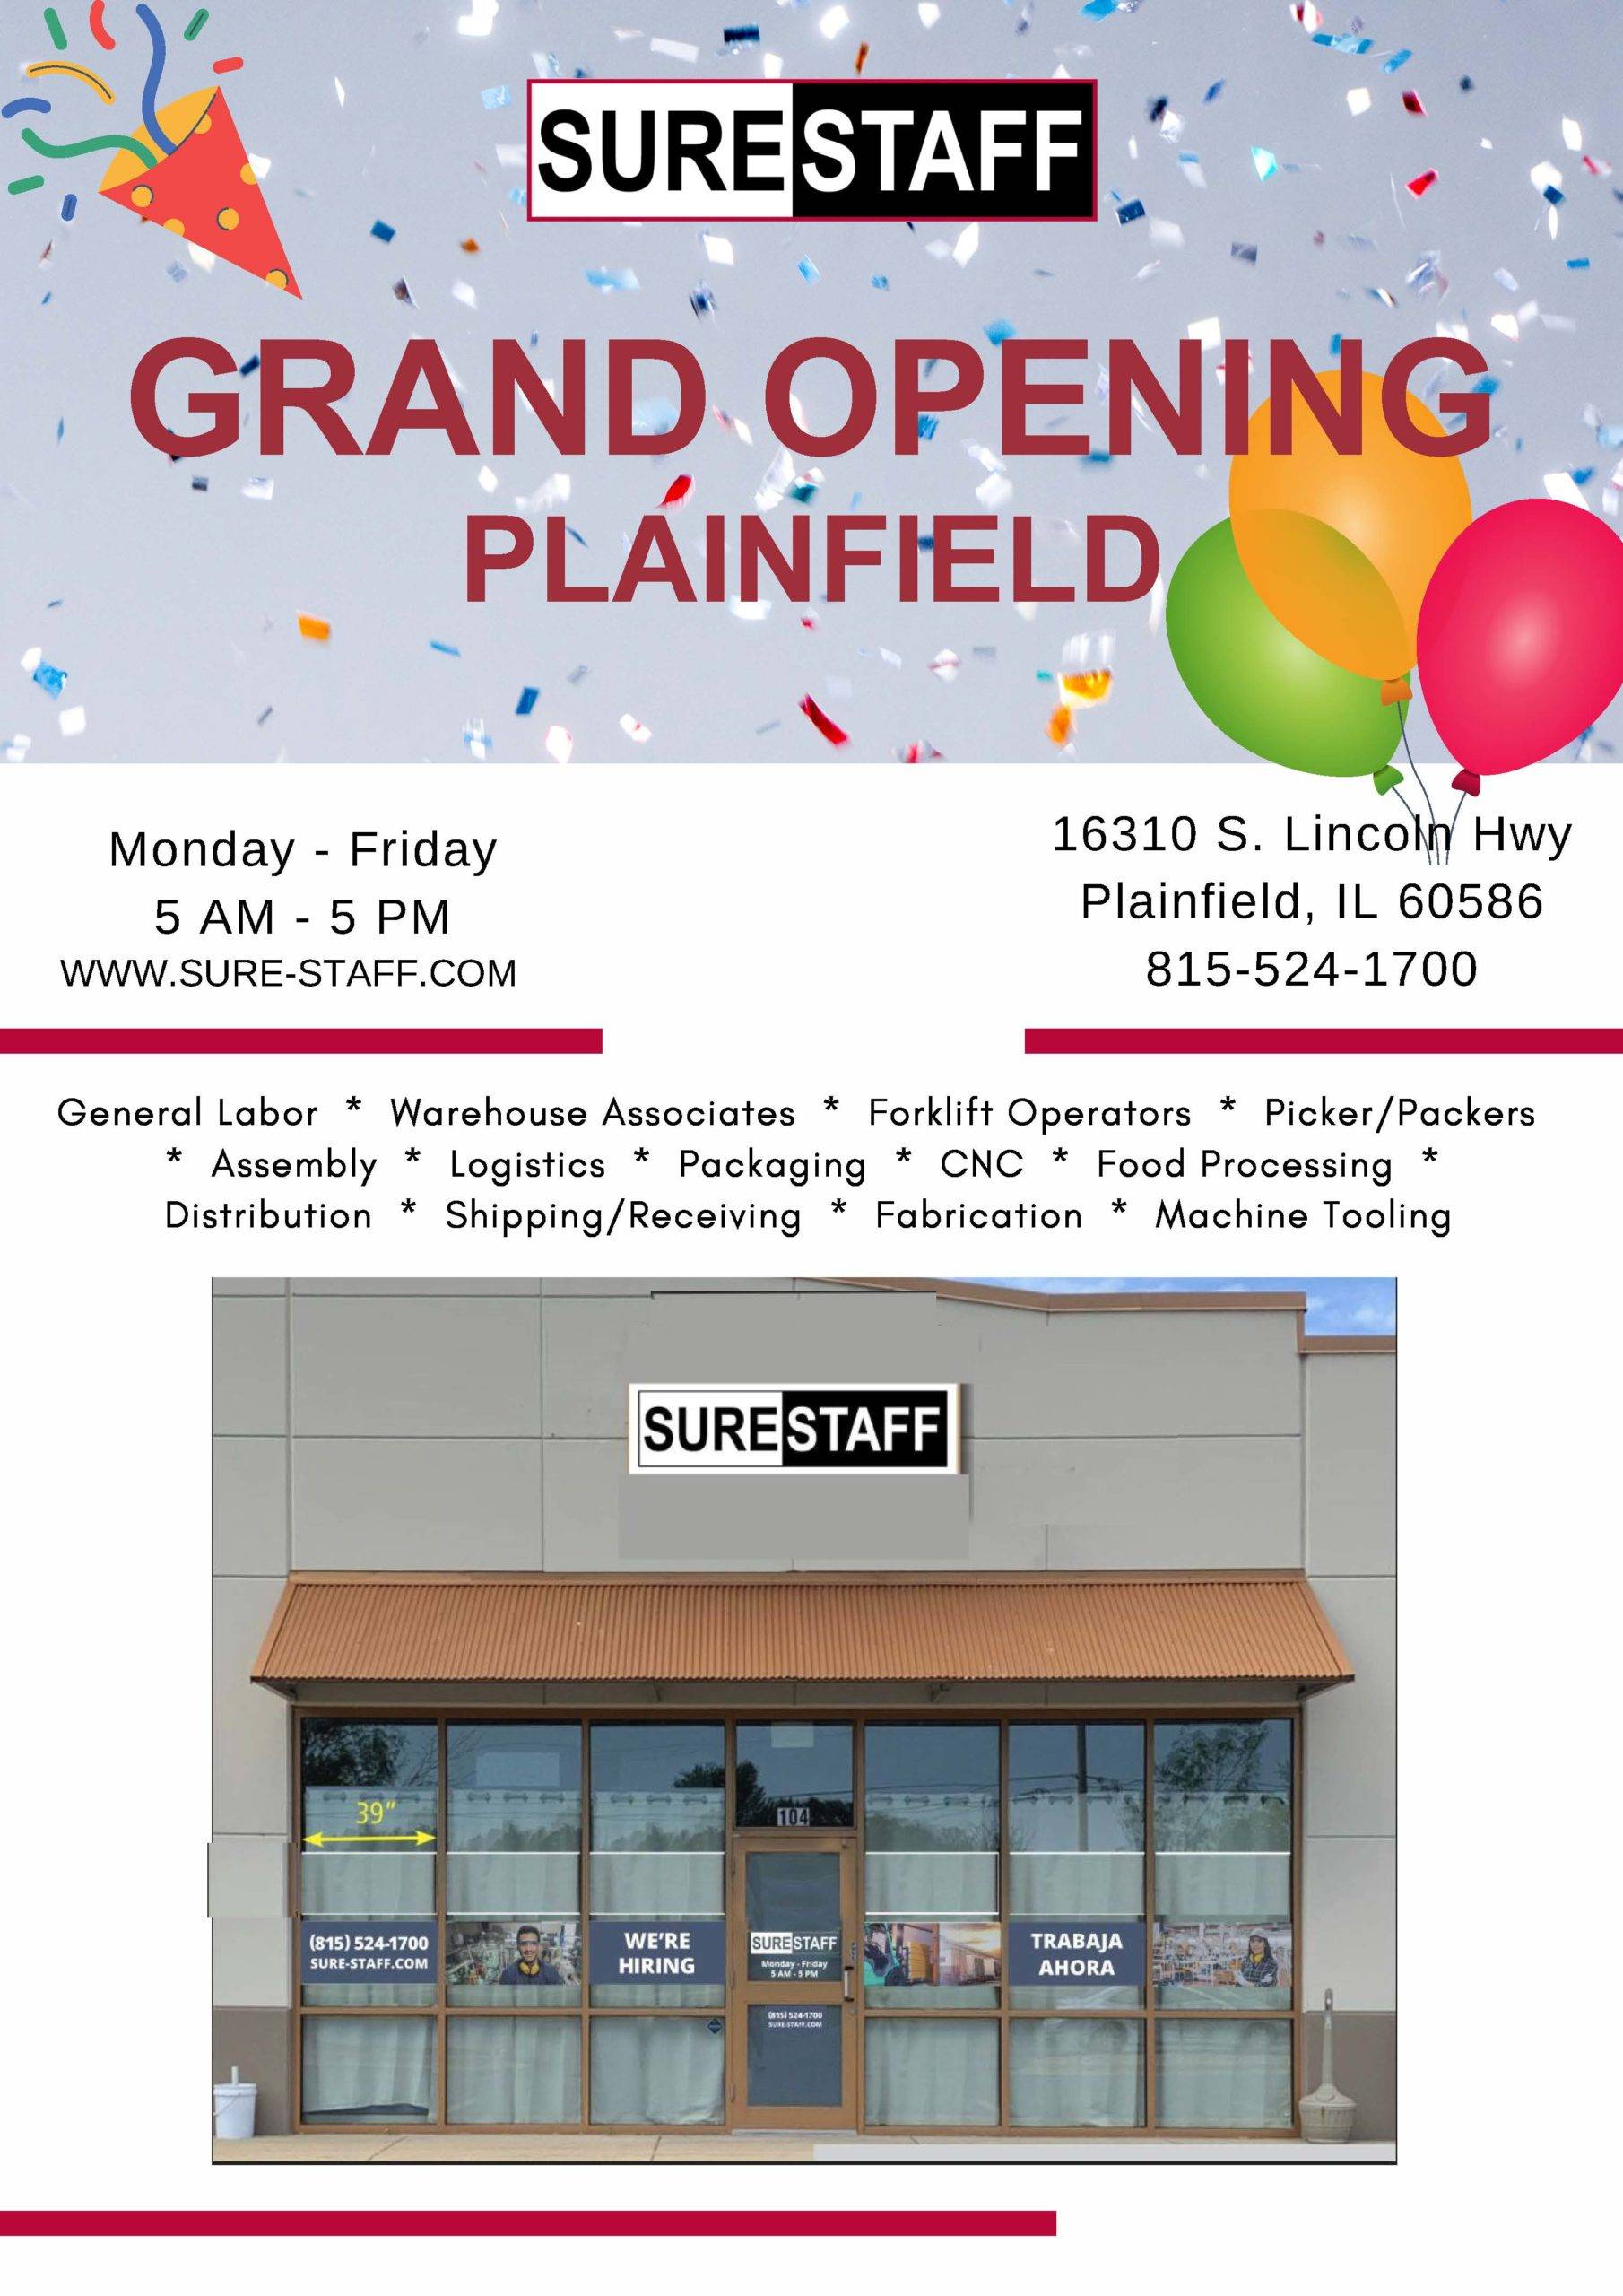 Surestaff Plainfield branch office